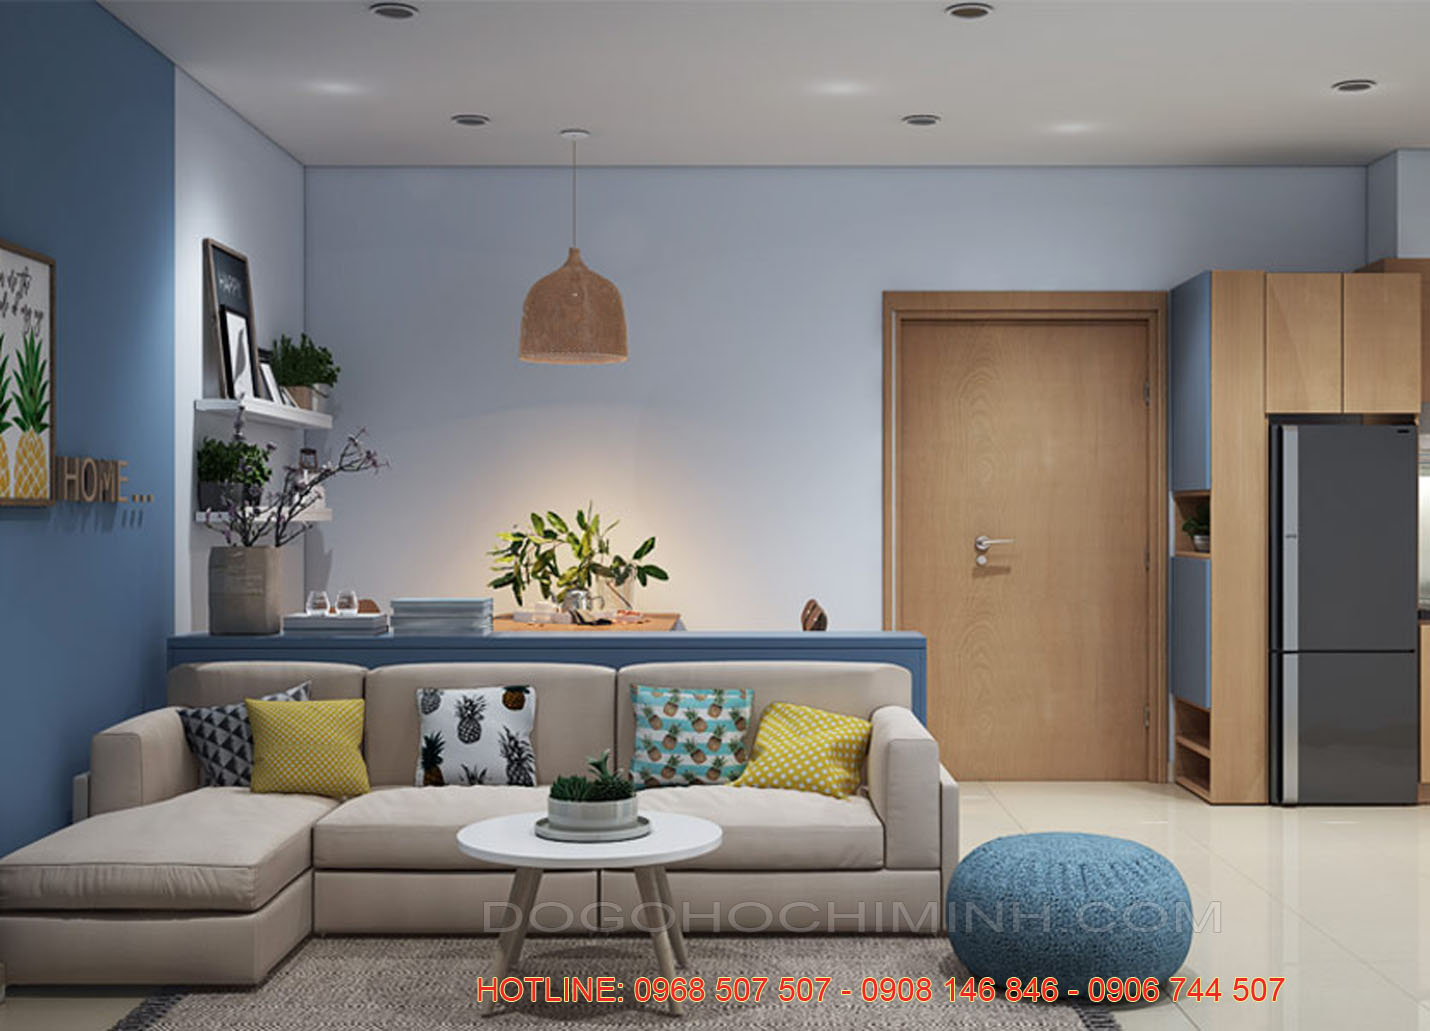 Thiết kế nội thất chung cư hiện đại đẹp nhất giá rẻ tại TPHCM